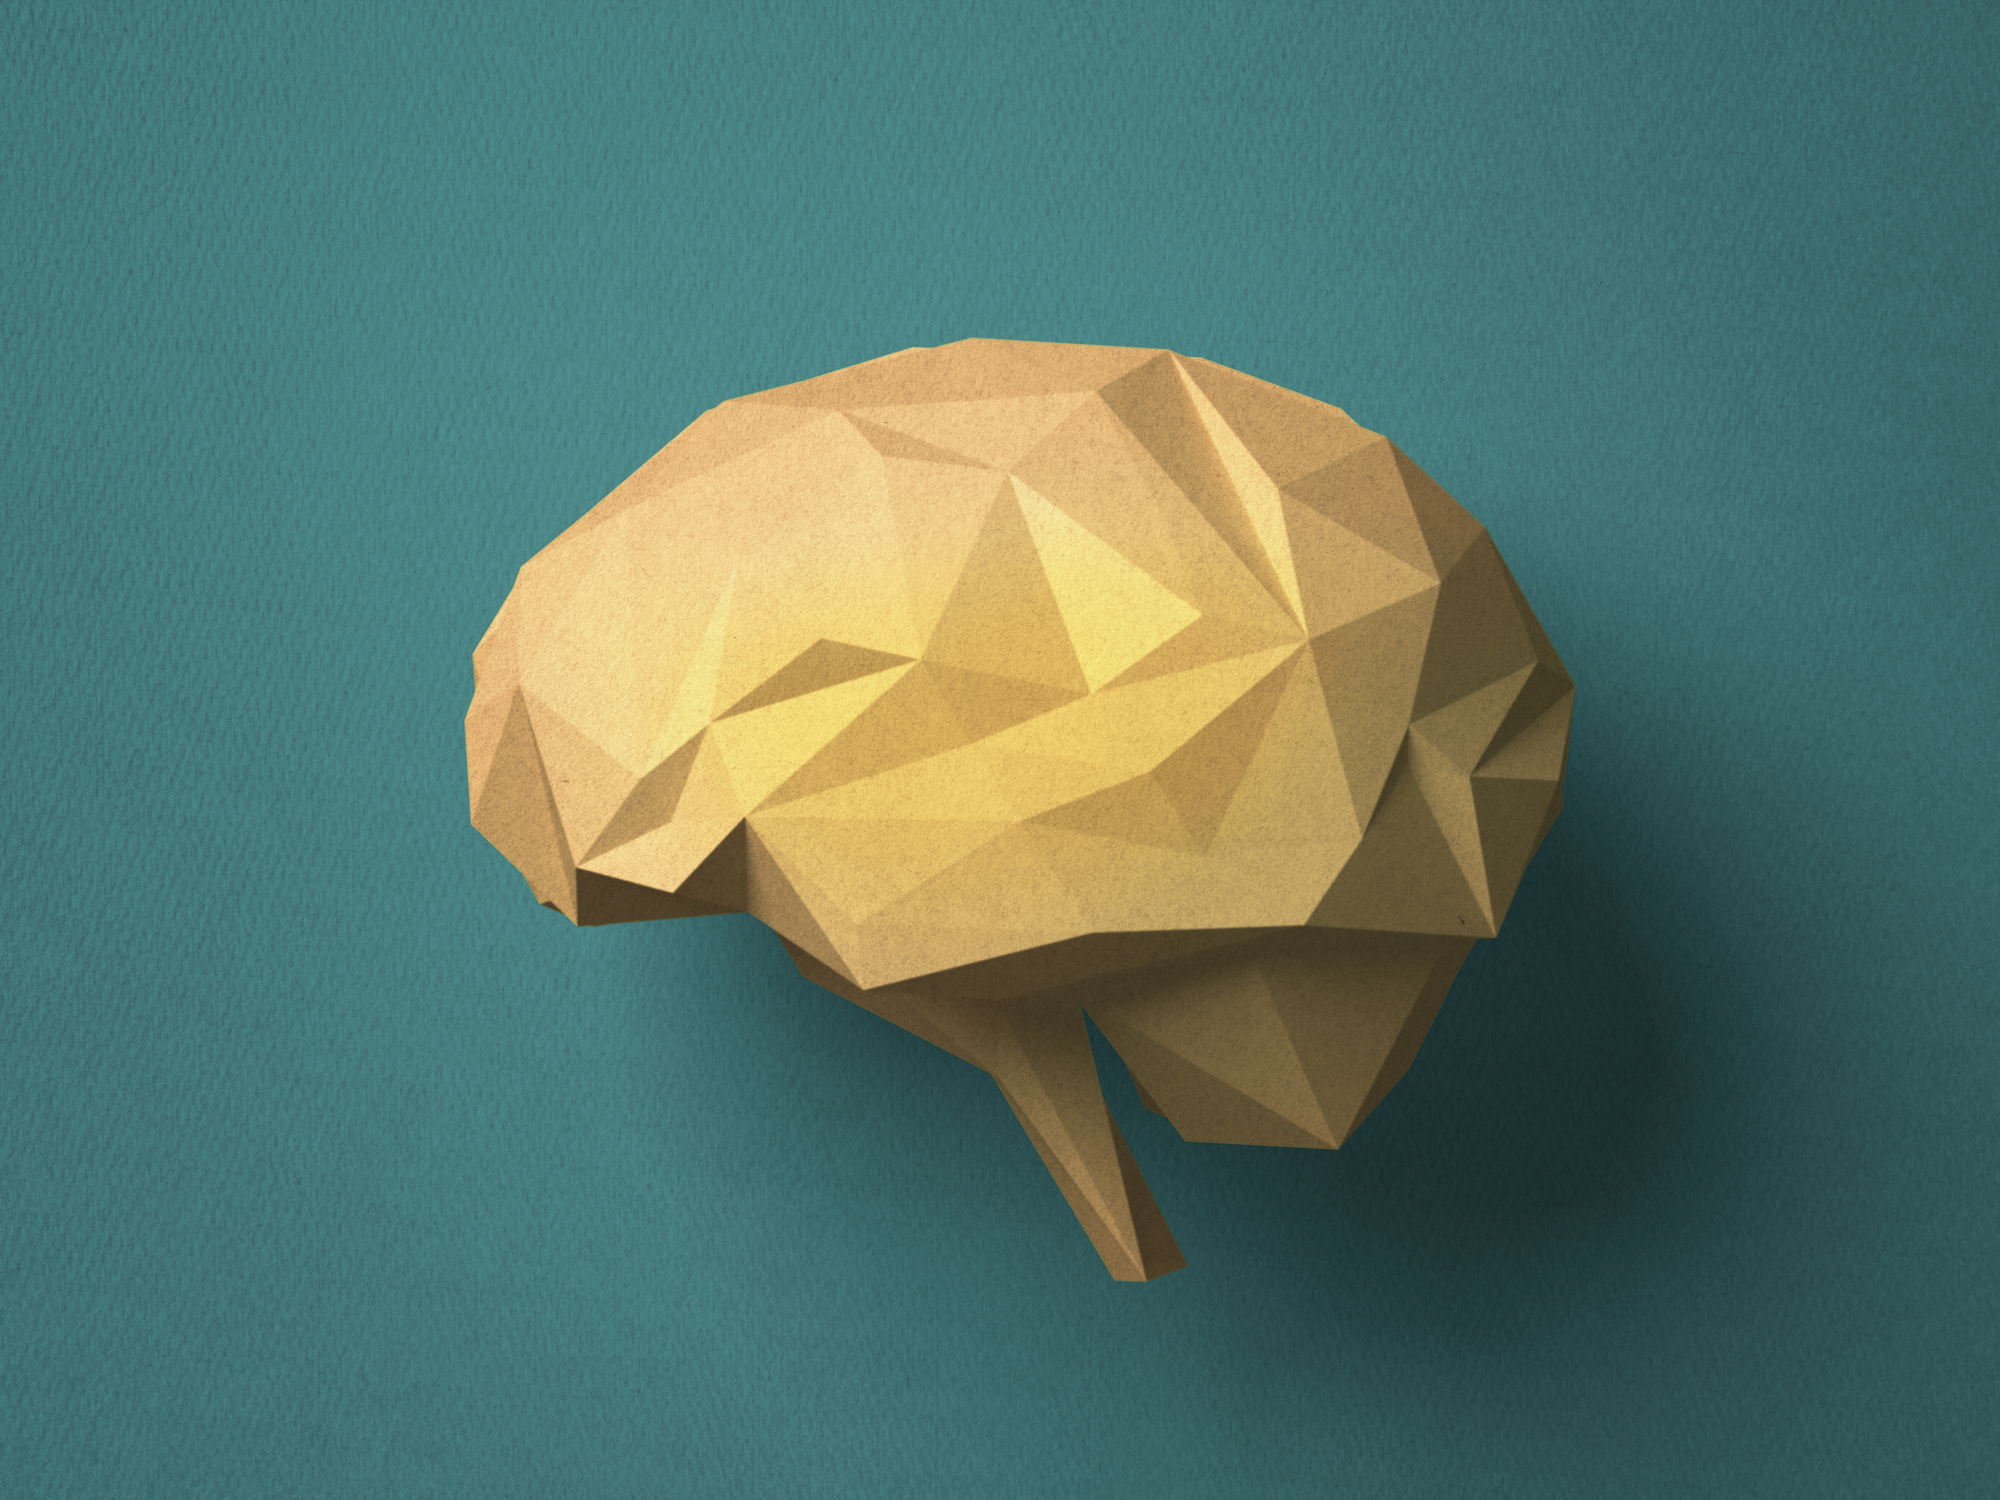 Paper craft Brain